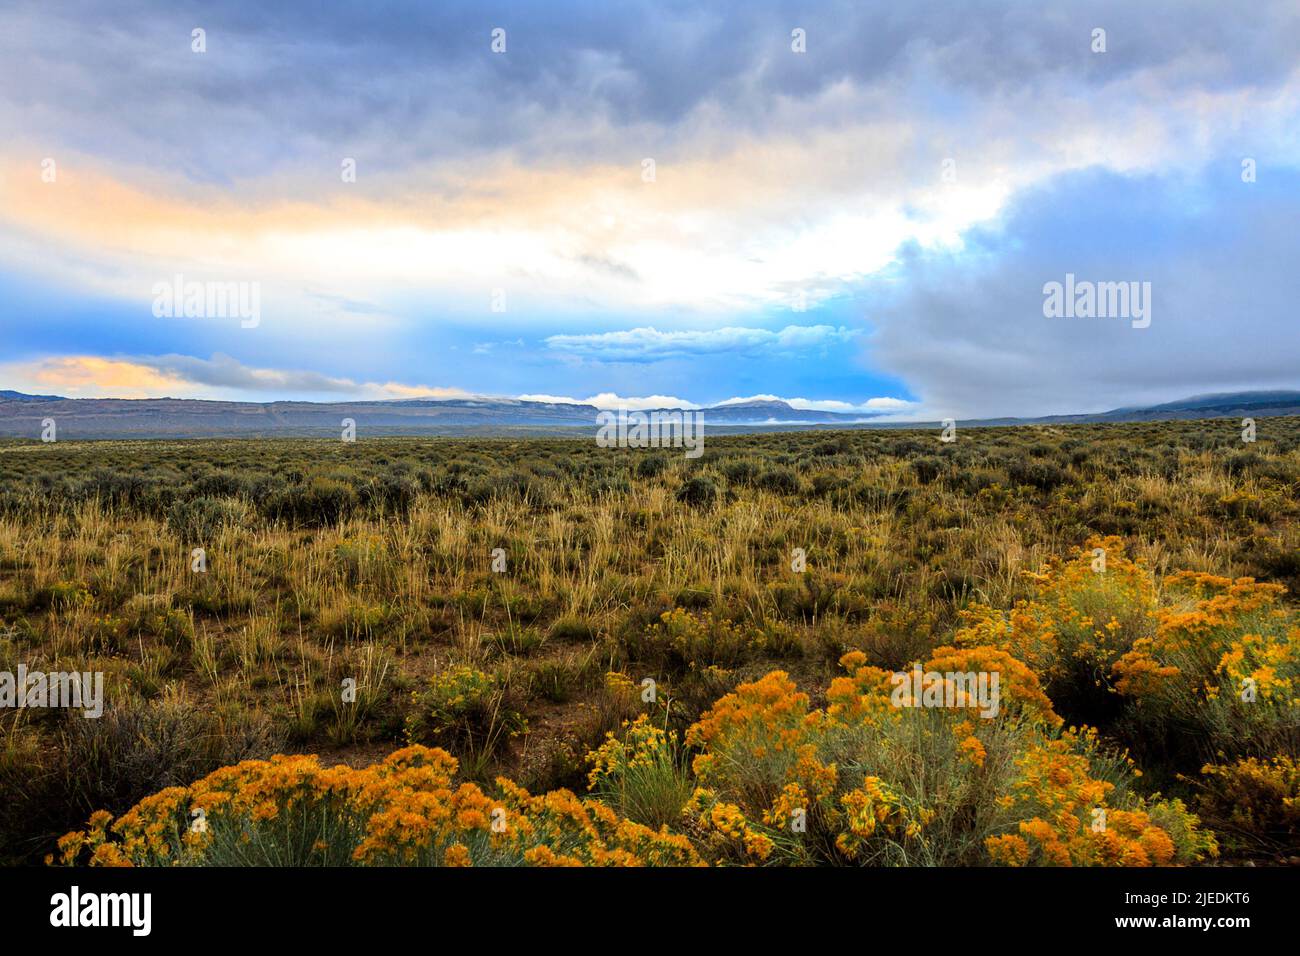 Stürmischer Himmel im Westen Colorados mit blauen, grauen, dunkelgrauen und gelben Strahlen der Spätnachtssonne erhellt die Blumen auf dem Feld. Stockfoto